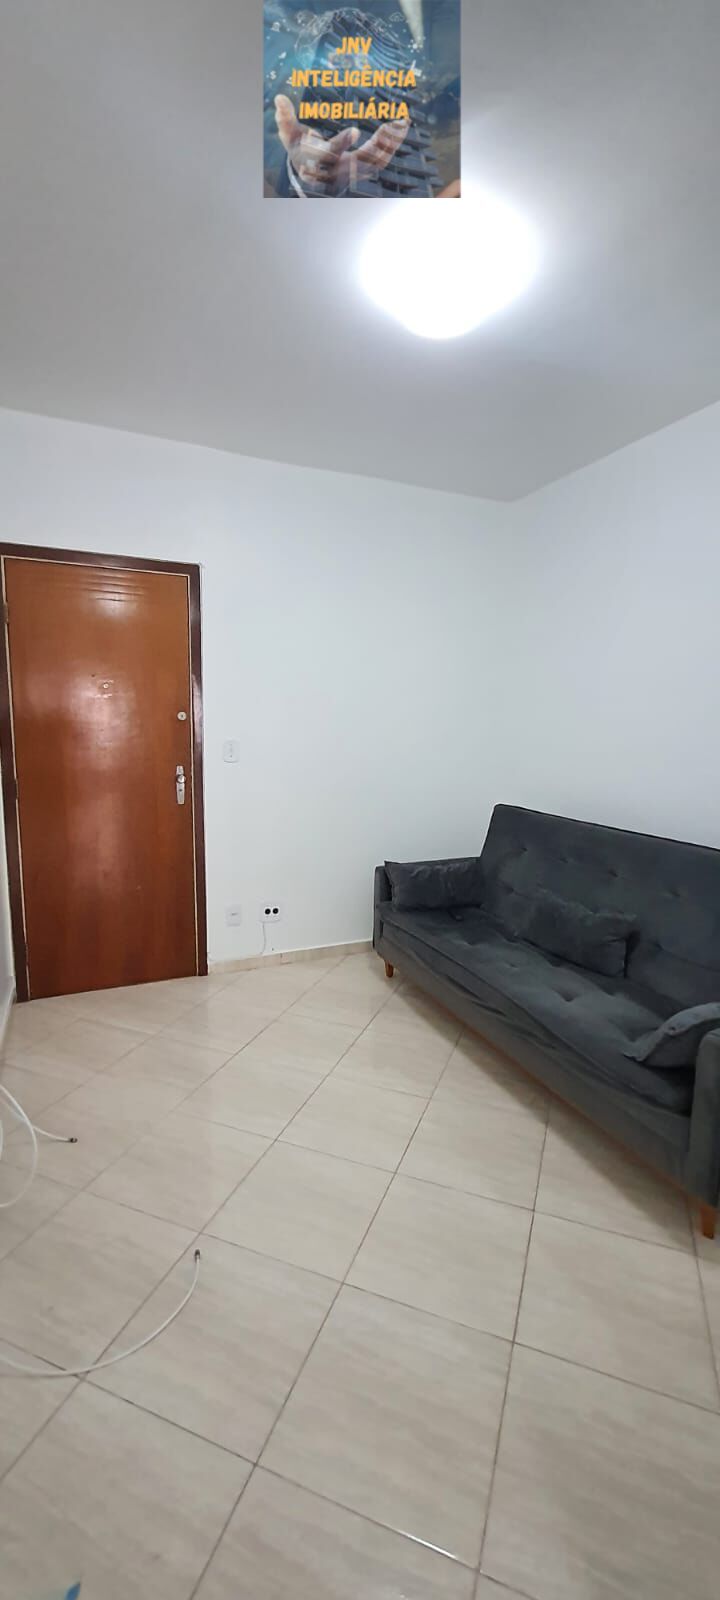 Apartamento, 1 quarto, 44 m² - Foto 2